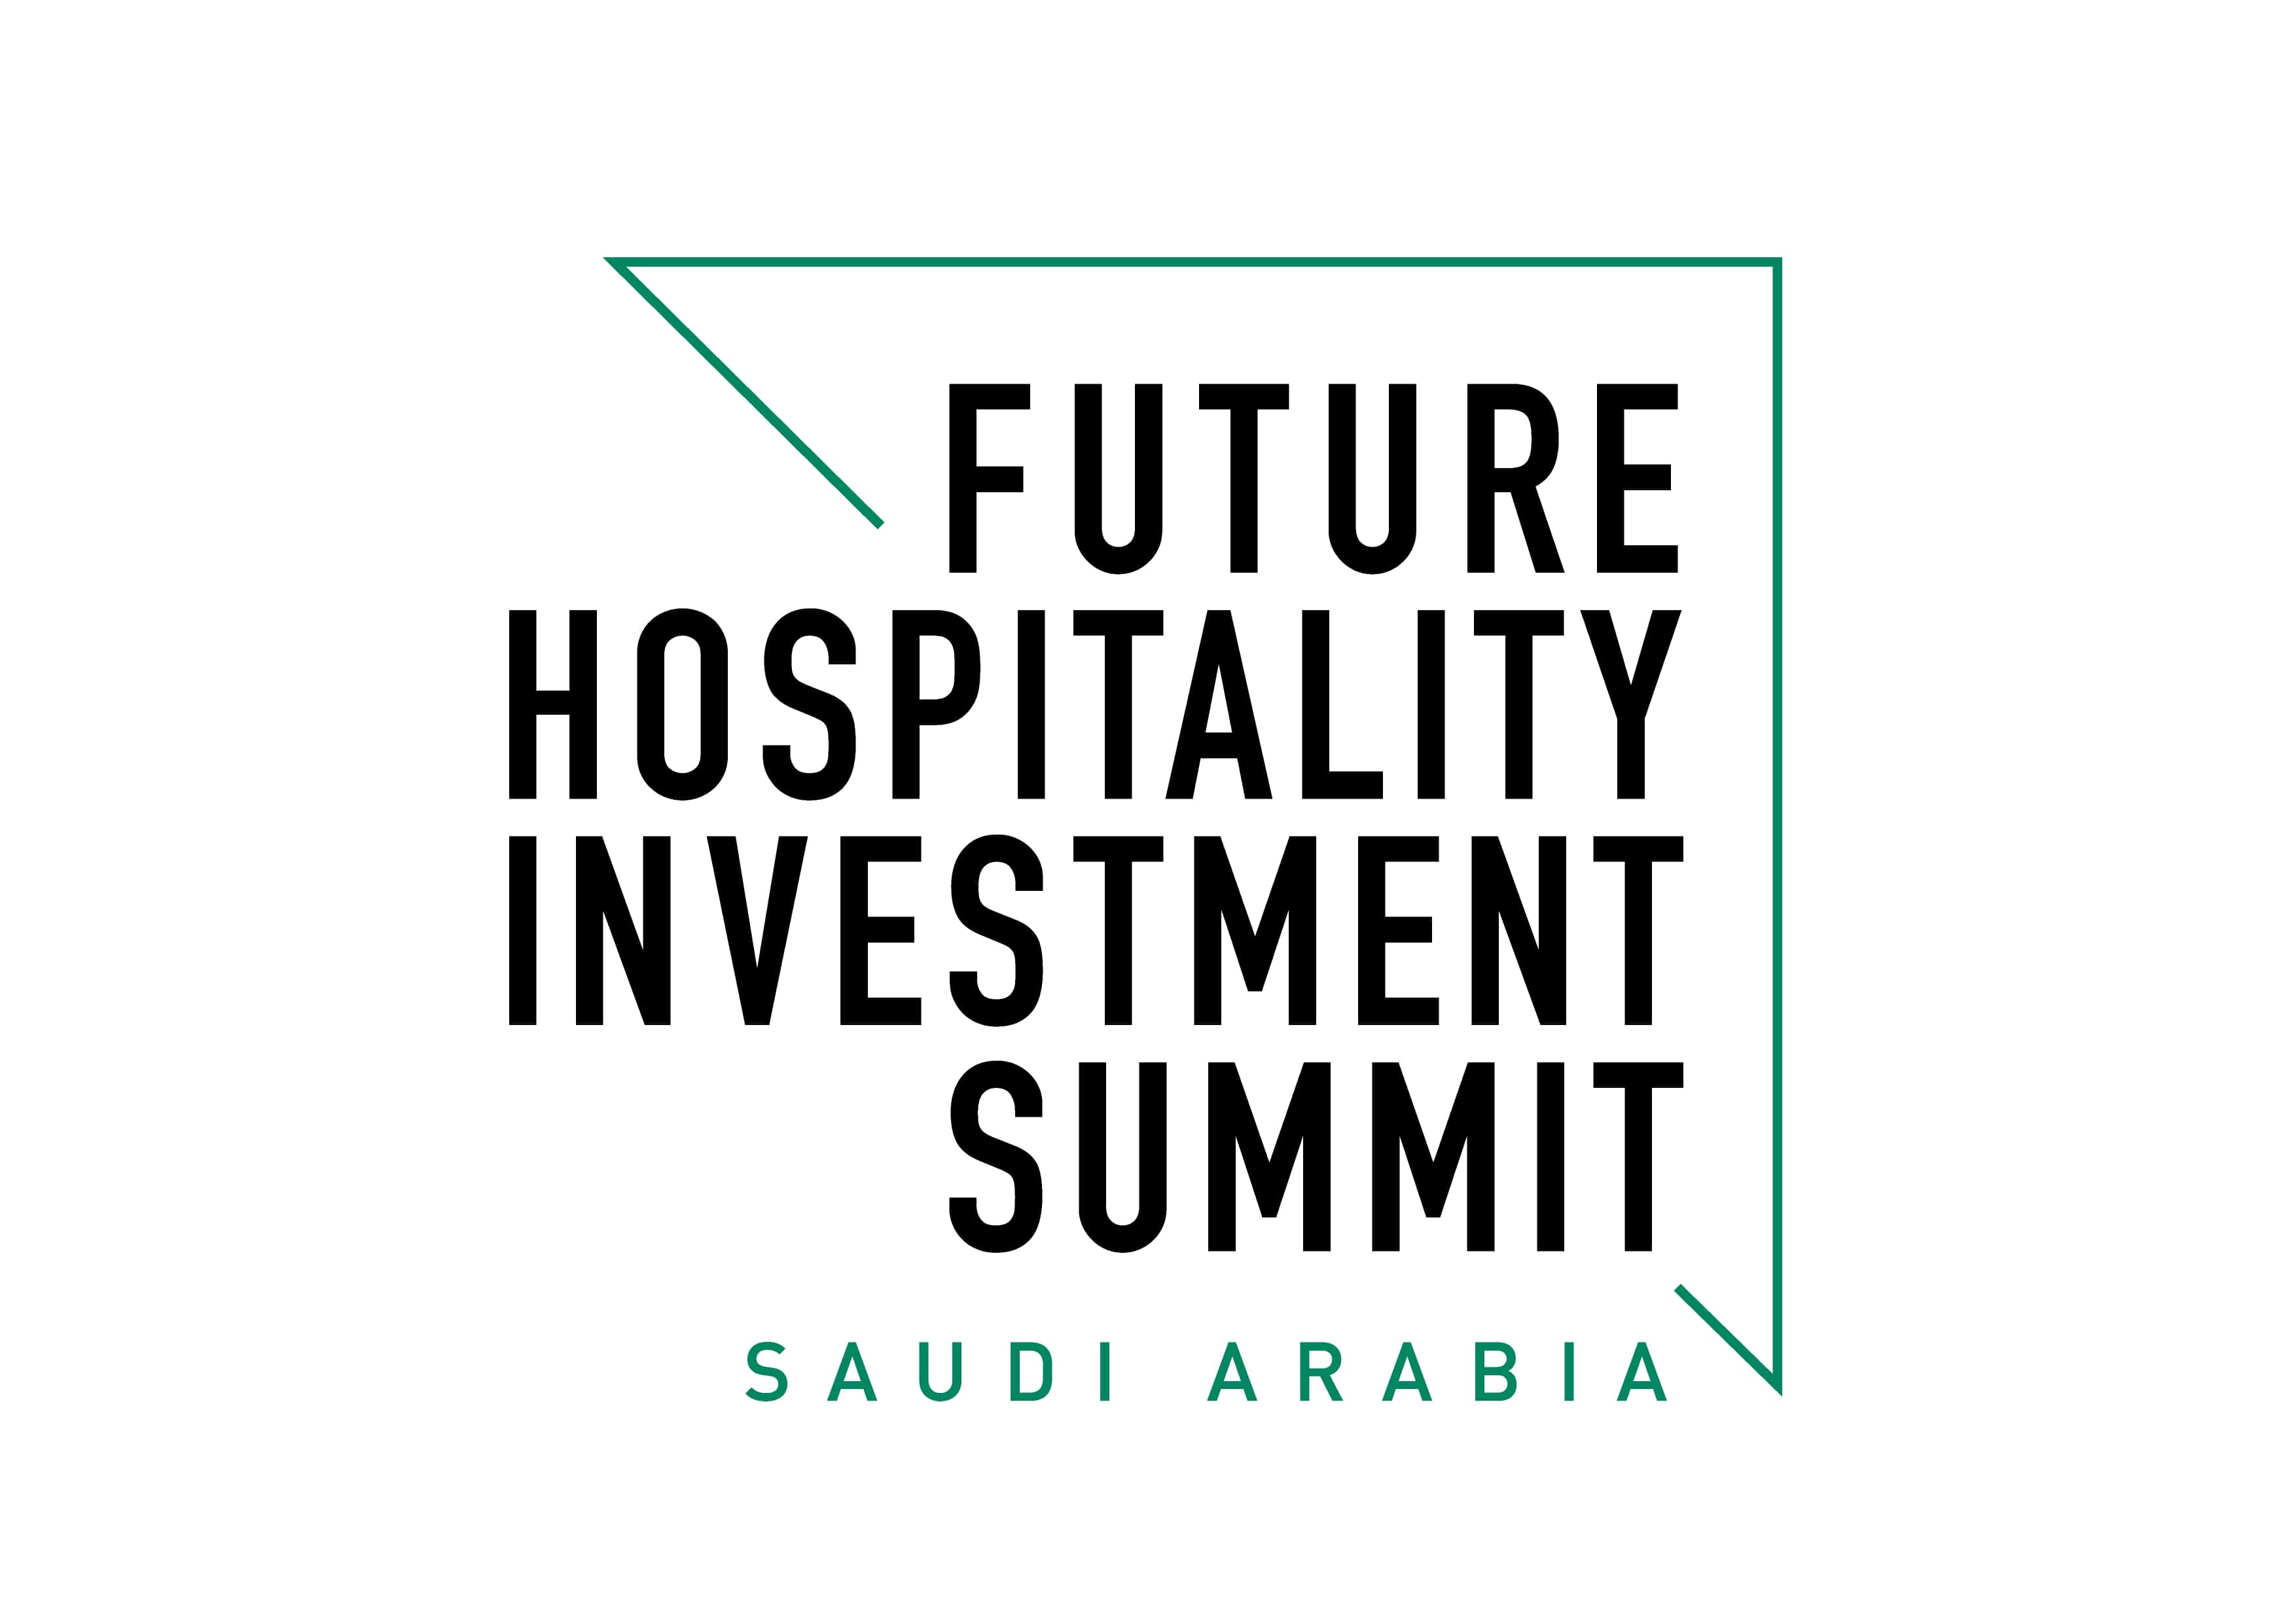 Future Hospitality Summit - Saudi Arabia 